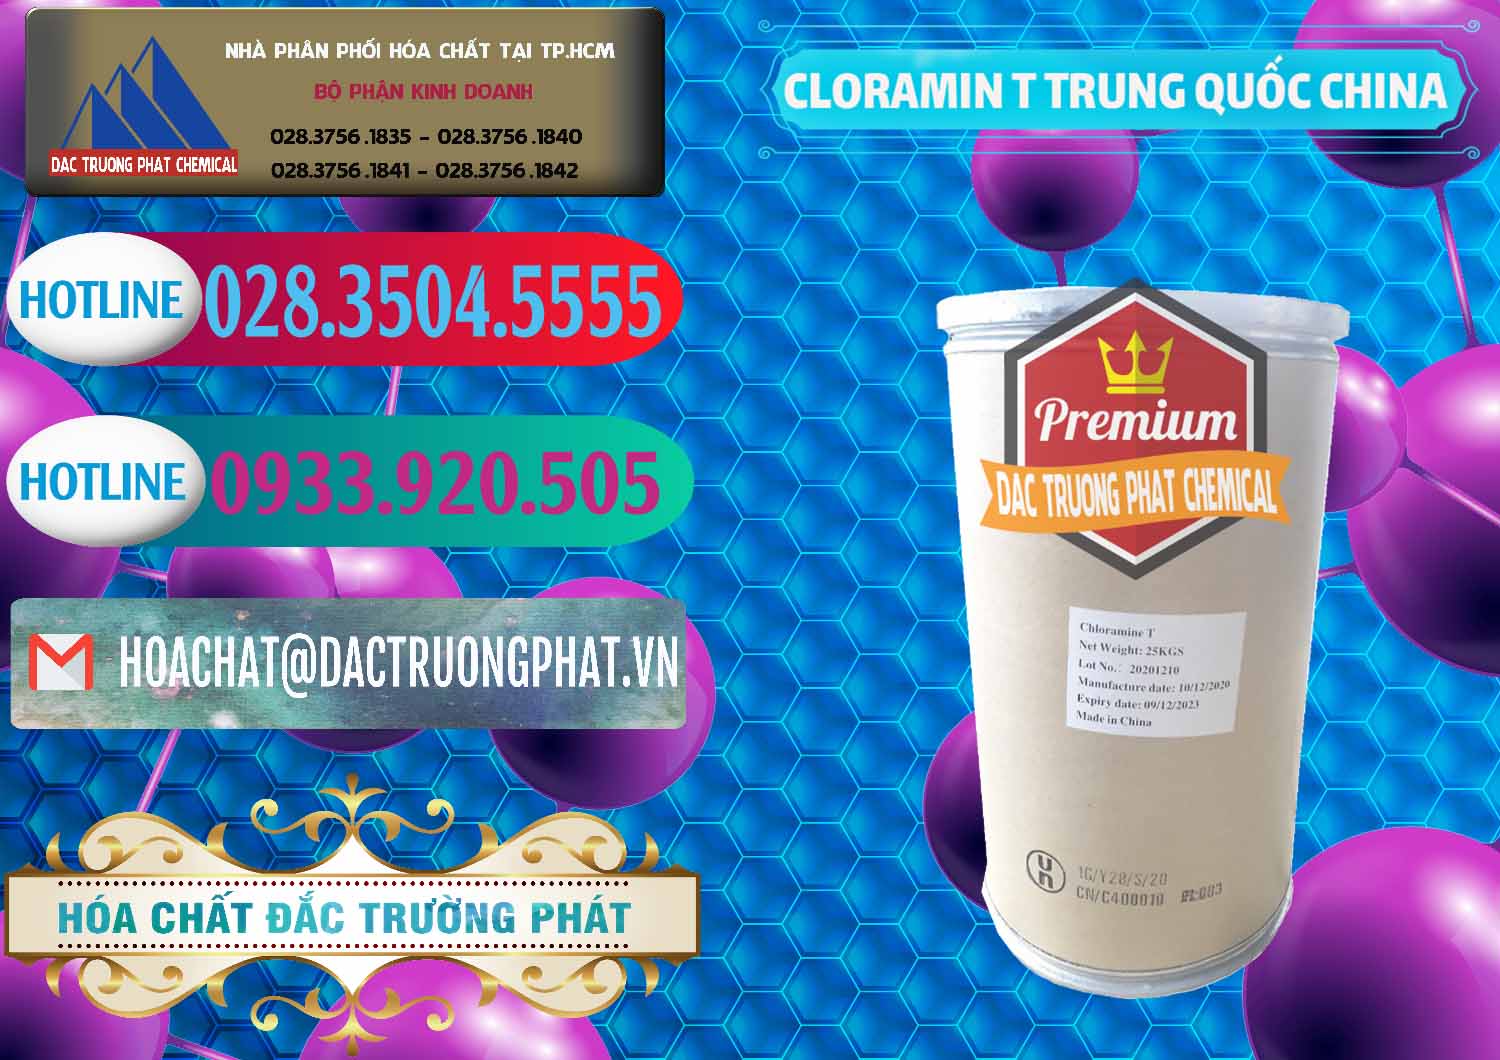 Công ty cung cấp & bán Cloramin T Khử Trùng, Diệt Khuẩn Trung Quốc China - 0301 - Công ty chuyên cung cấp ( bán ) hóa chất tại TP.HCM - truongphat.vn